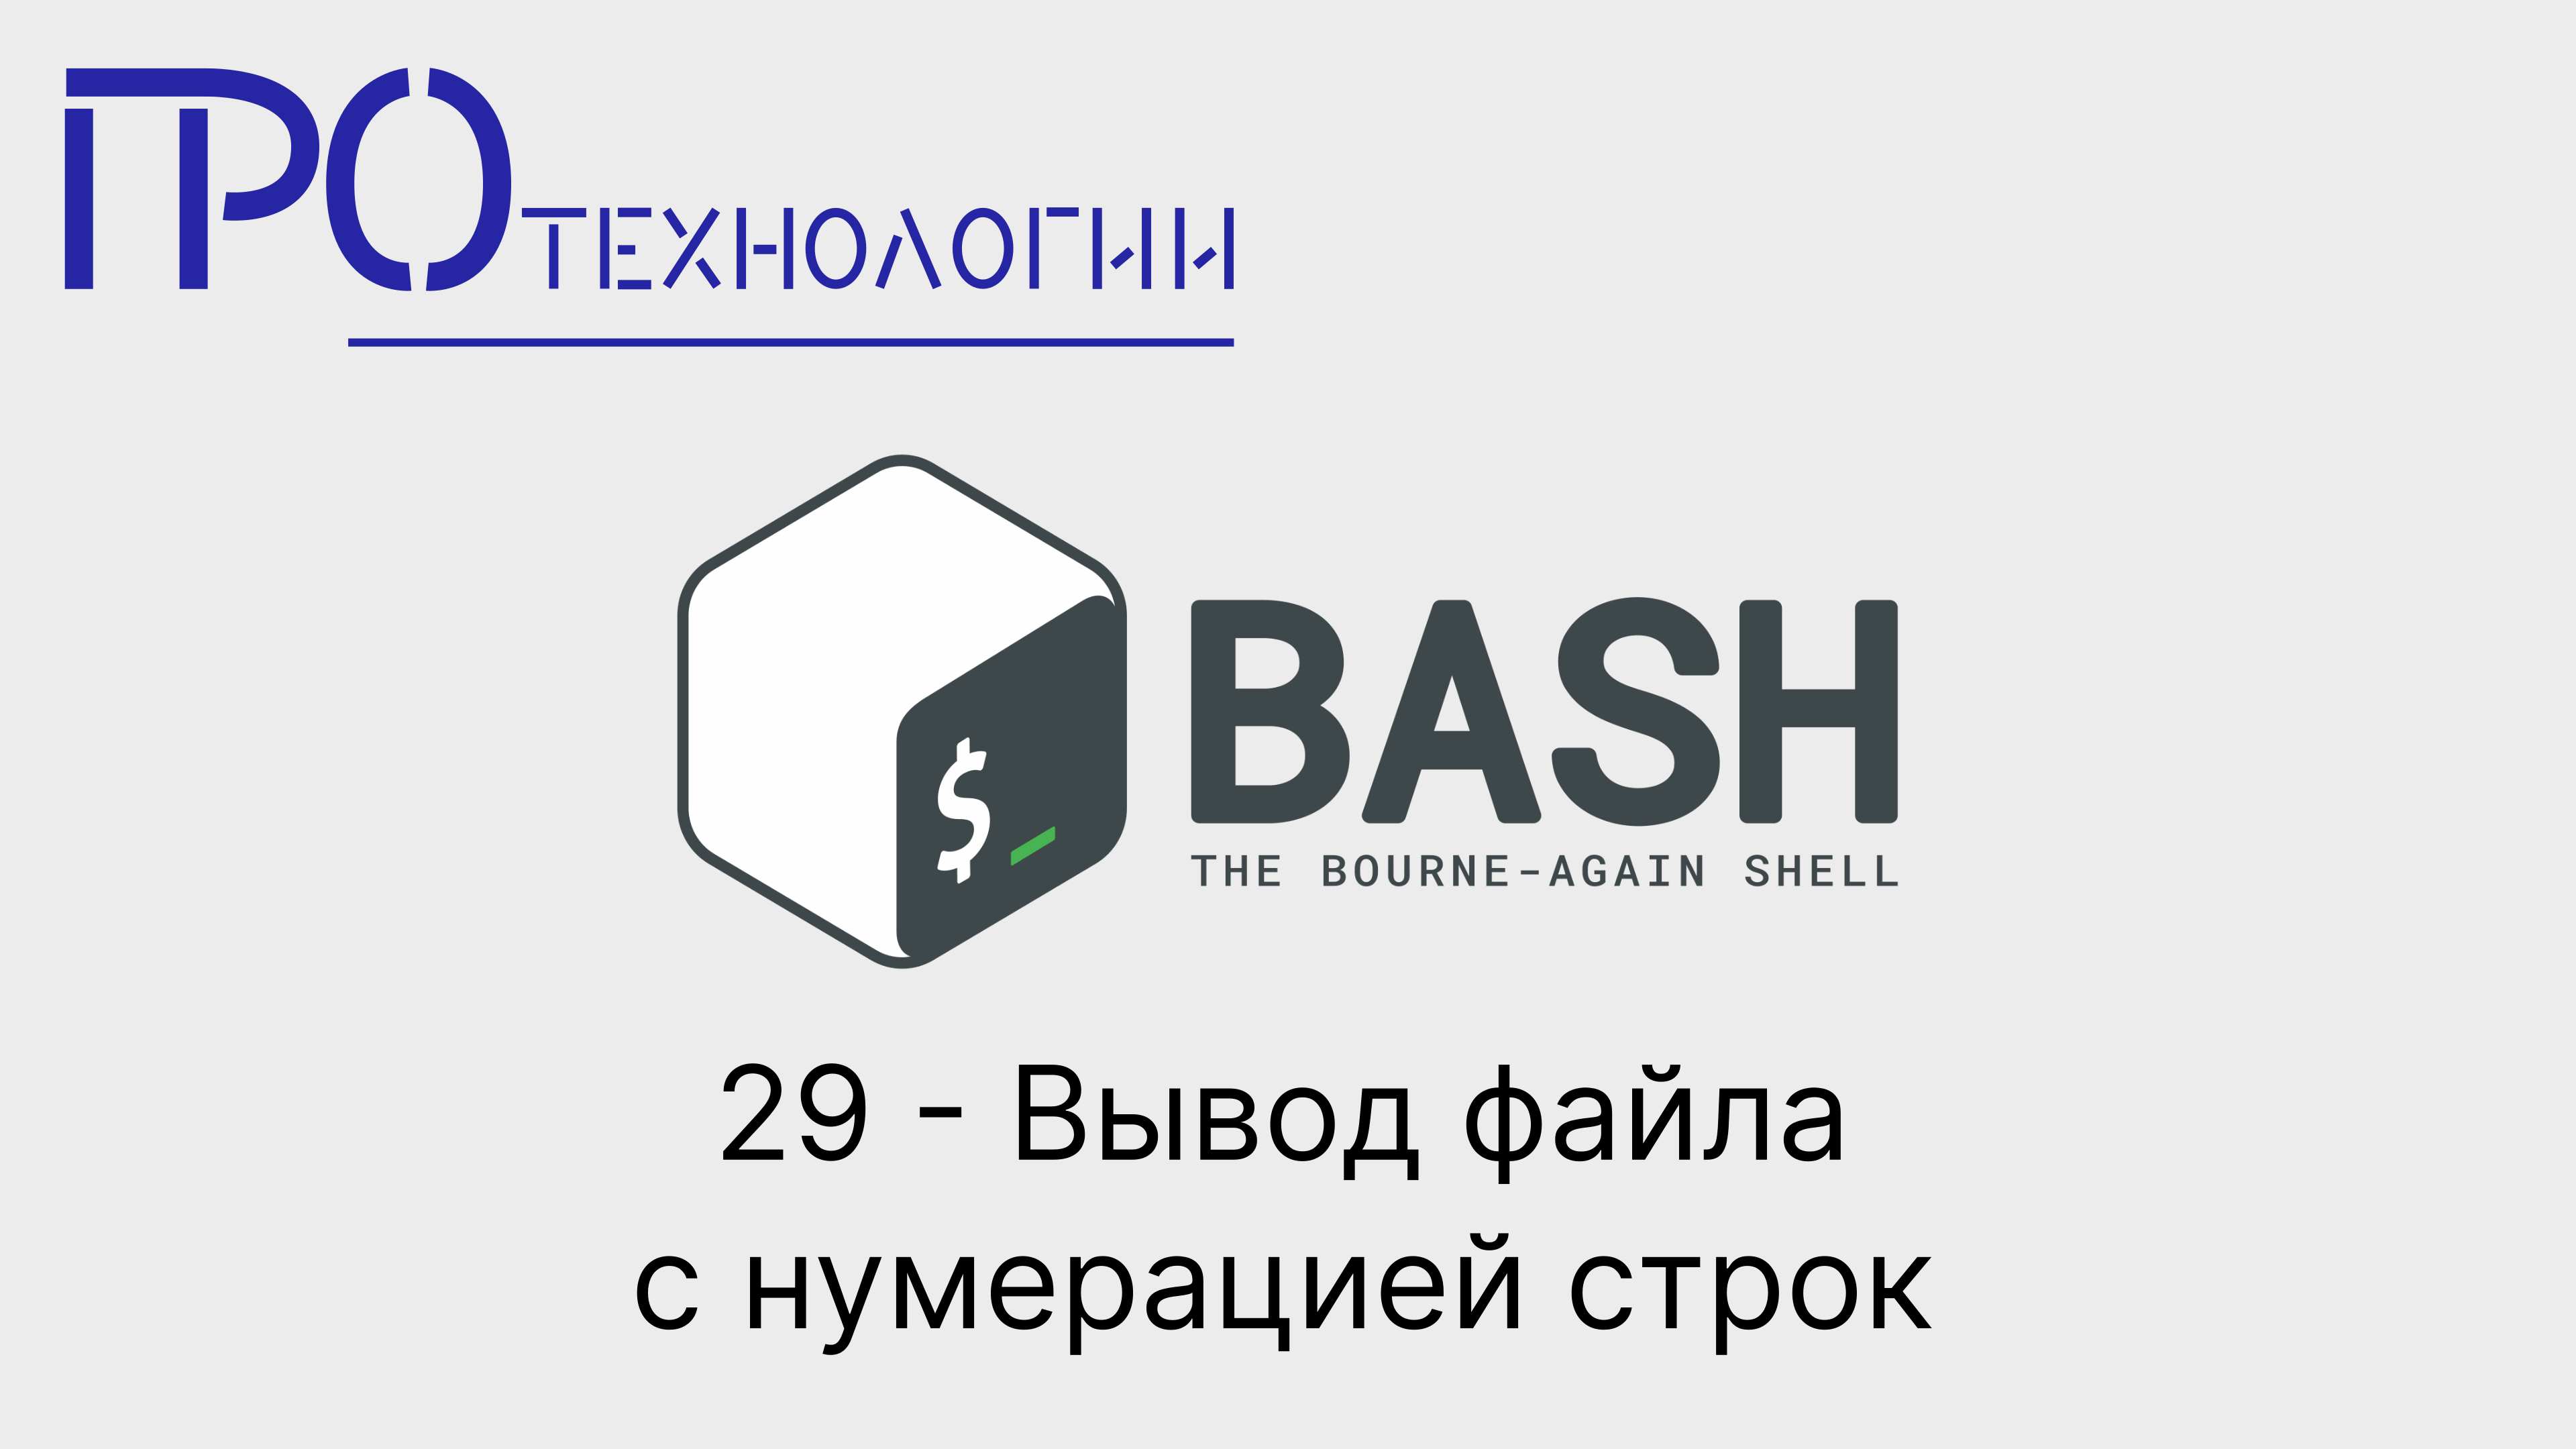 29 Bash - Вывод файла с нумерацией строк